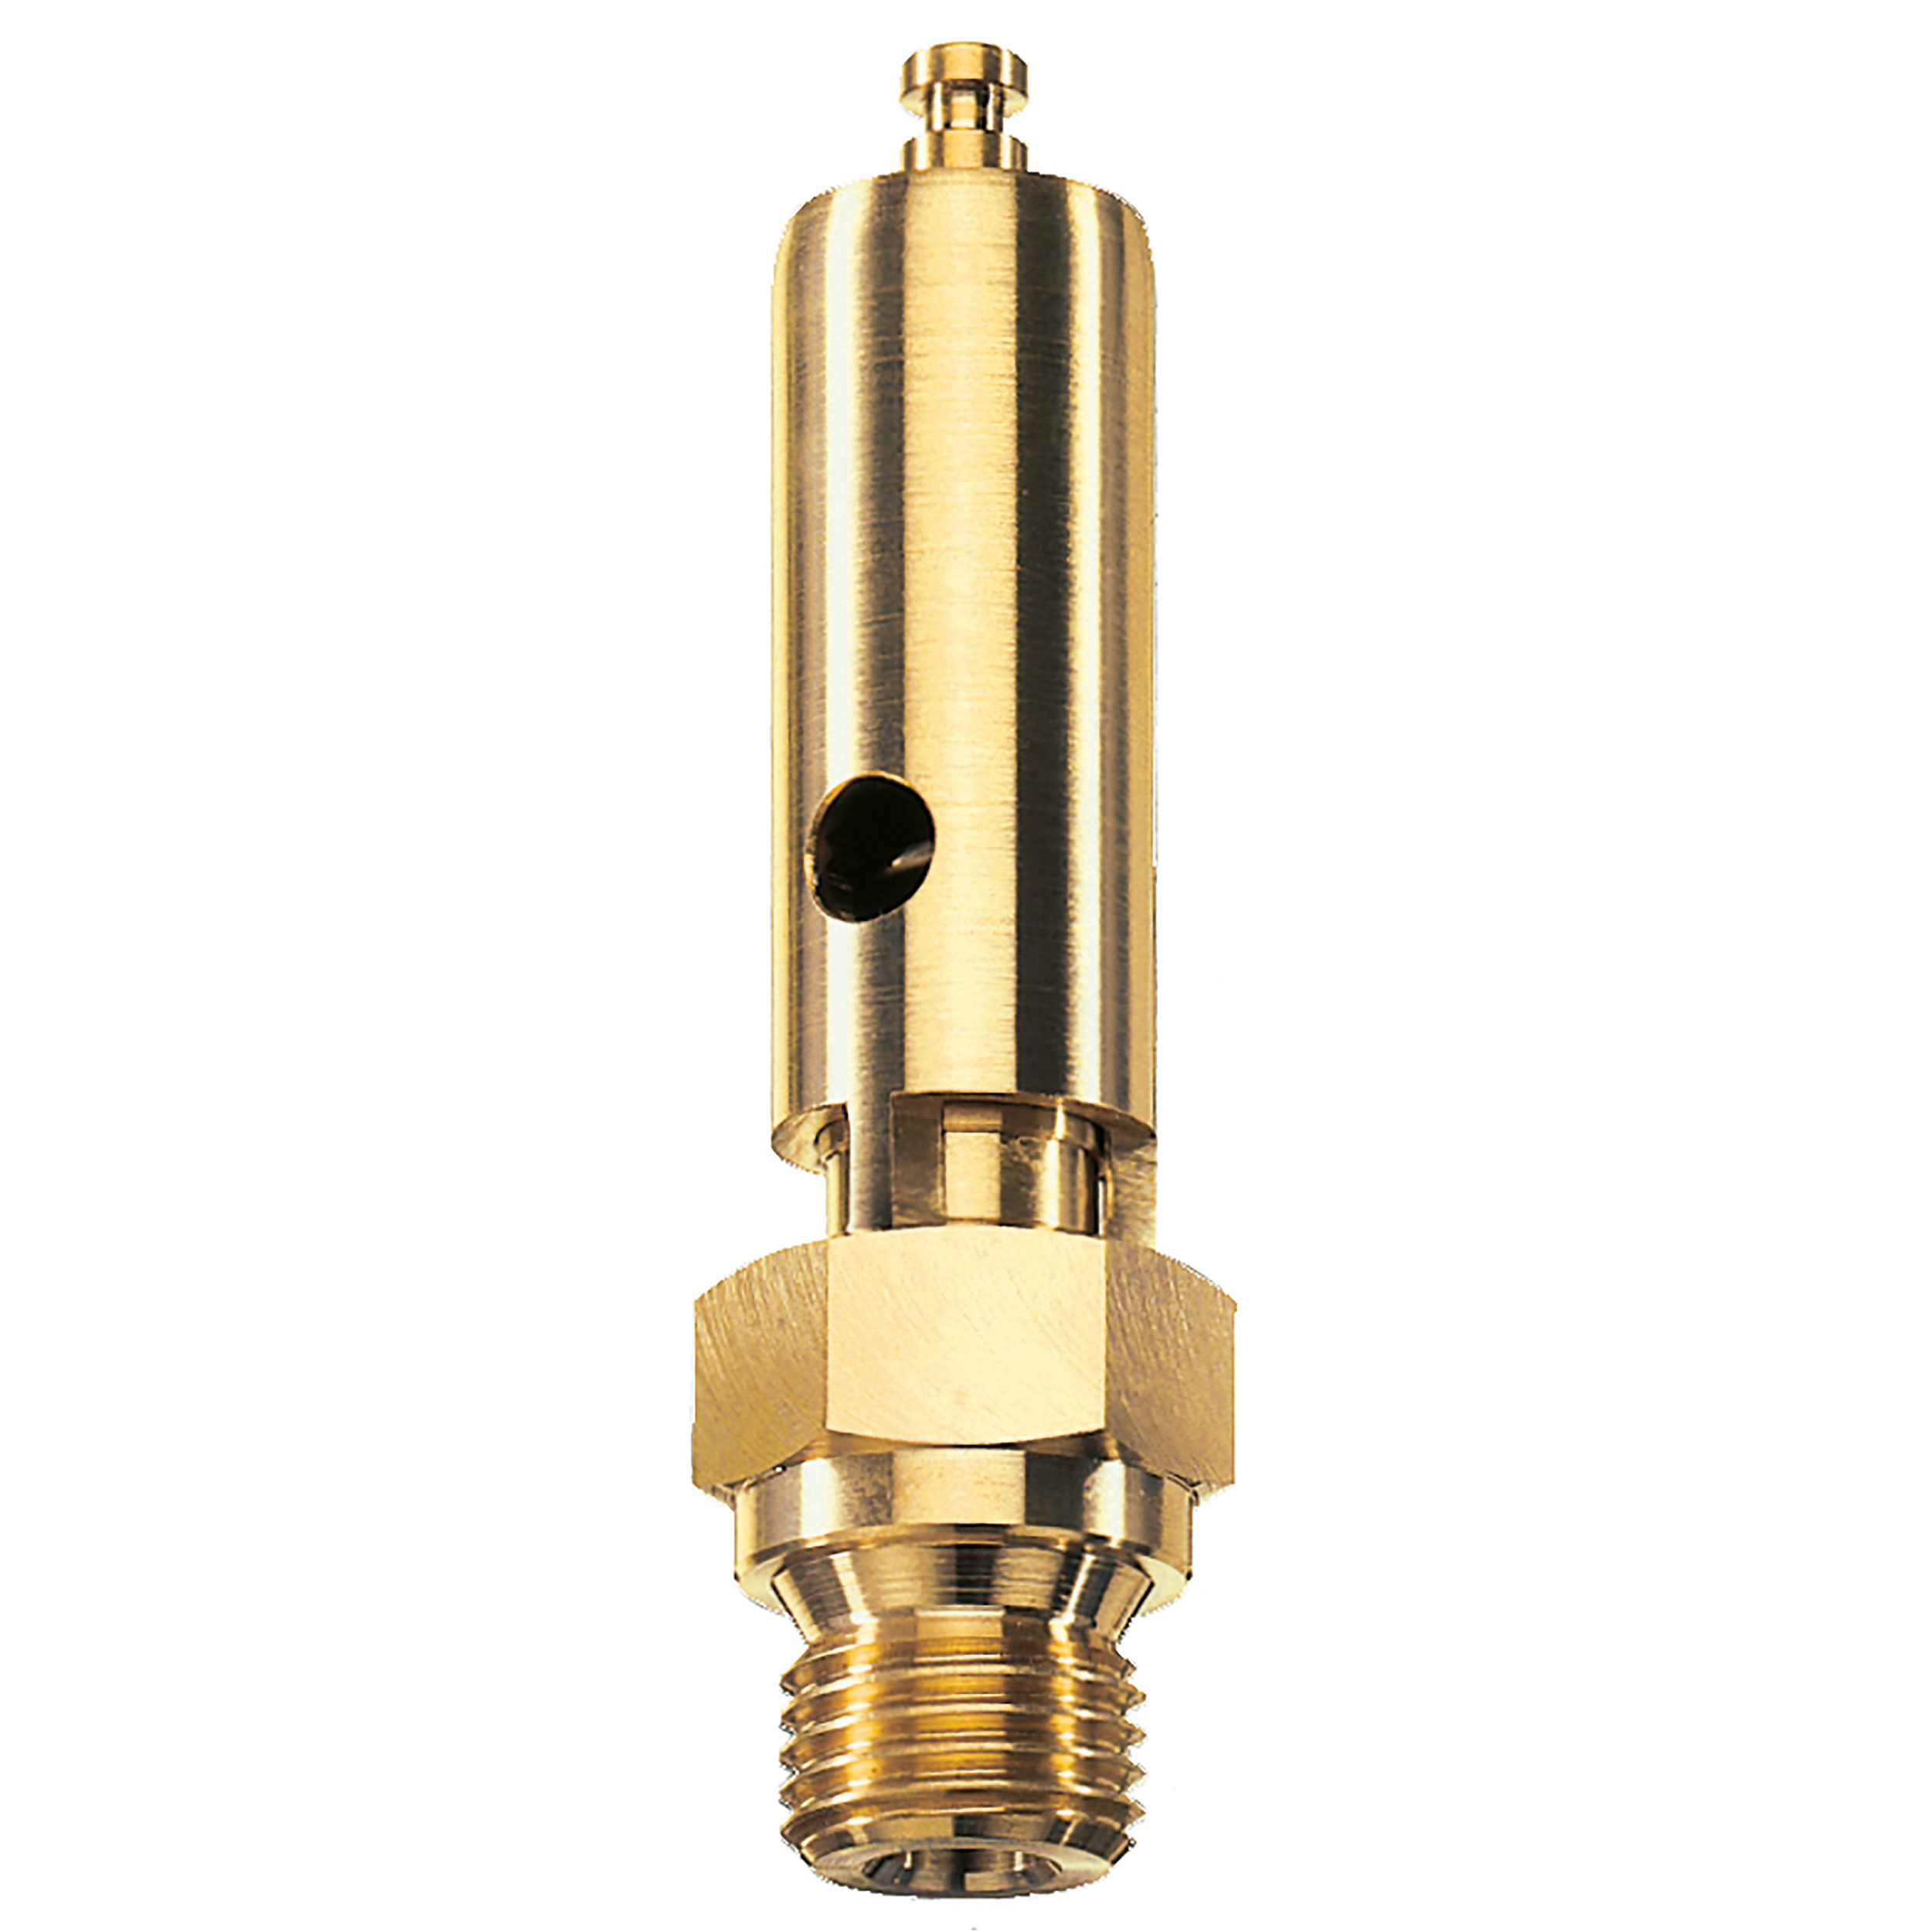 Savety valve component tested DN 6, G¼, L: 60 mm, seal: FKM, set pressure: 18.2 bar (263,9 psi), TÜV approval